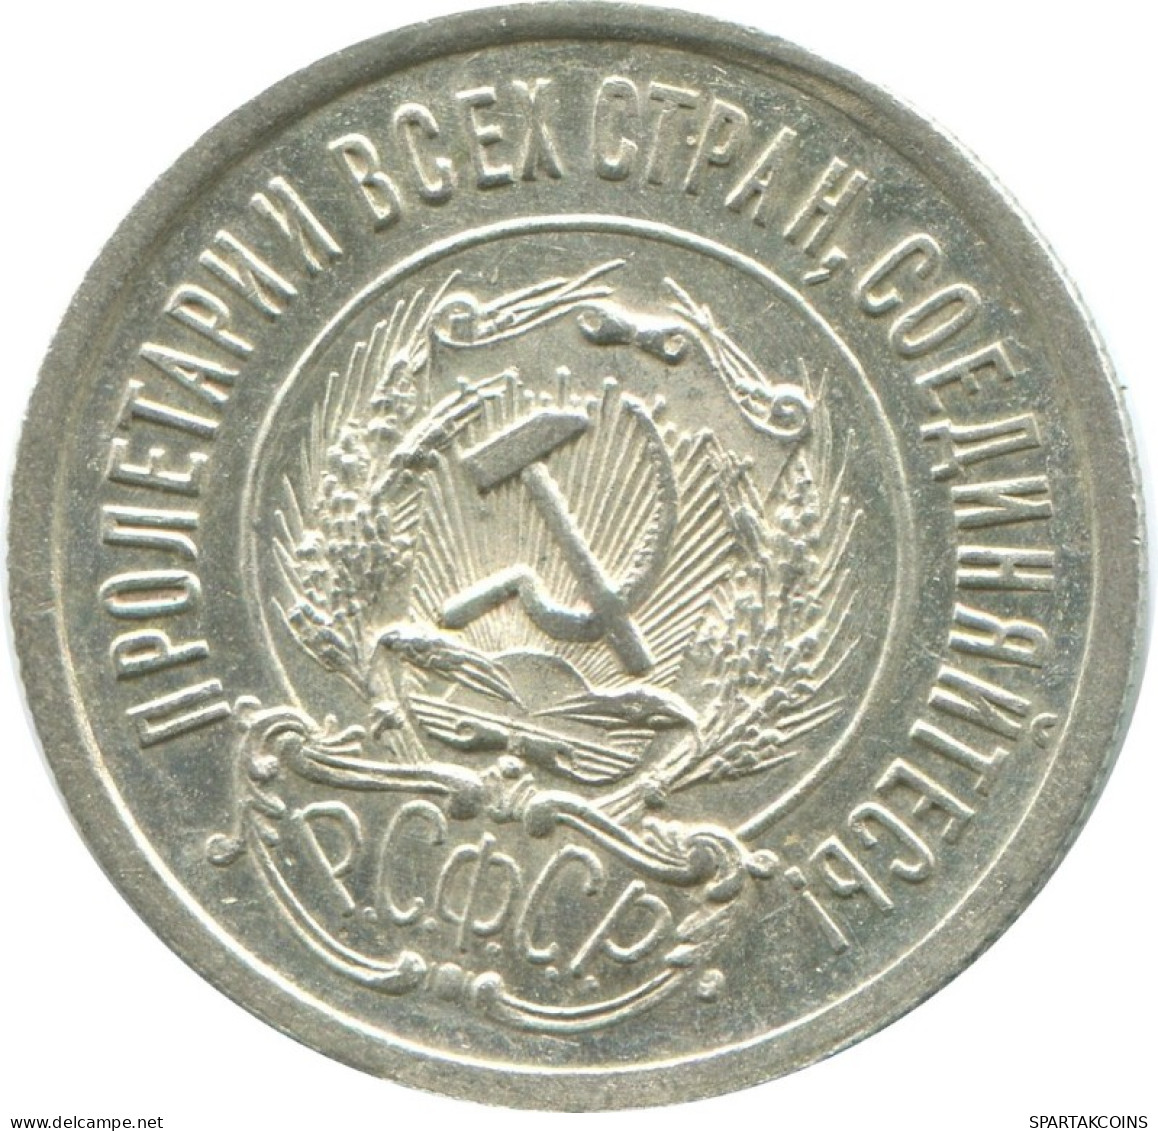 20 KOPEKS 1923 RUSSIA RSFSR SILVER Coin HIGH GRADE #AF666.U.A - Rusland